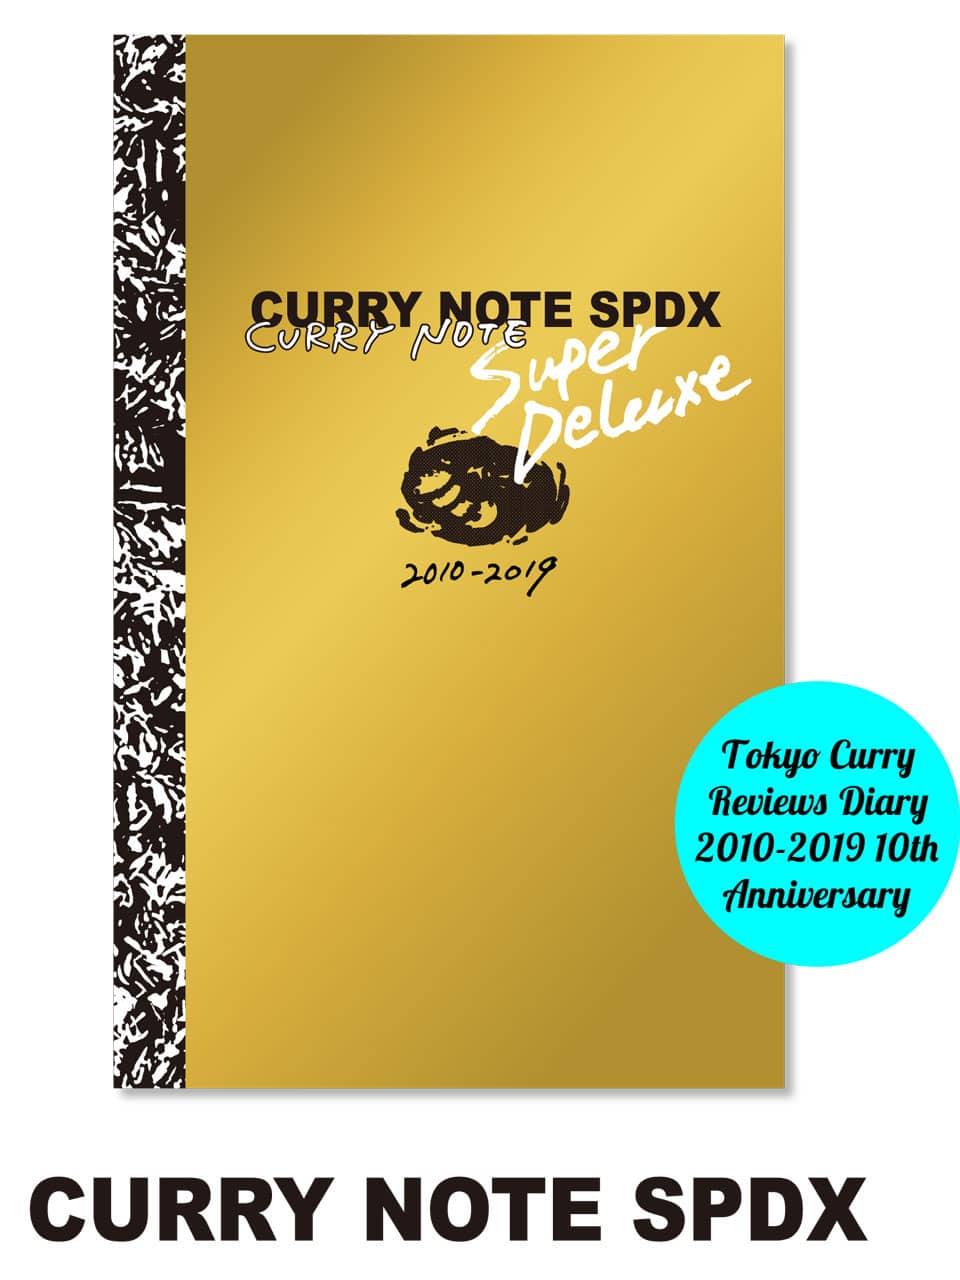 210店舗のカレー屋情報が1冊に。ZINE「CURRY NOTE」の10年間をまとめたスペシャルブックが発売